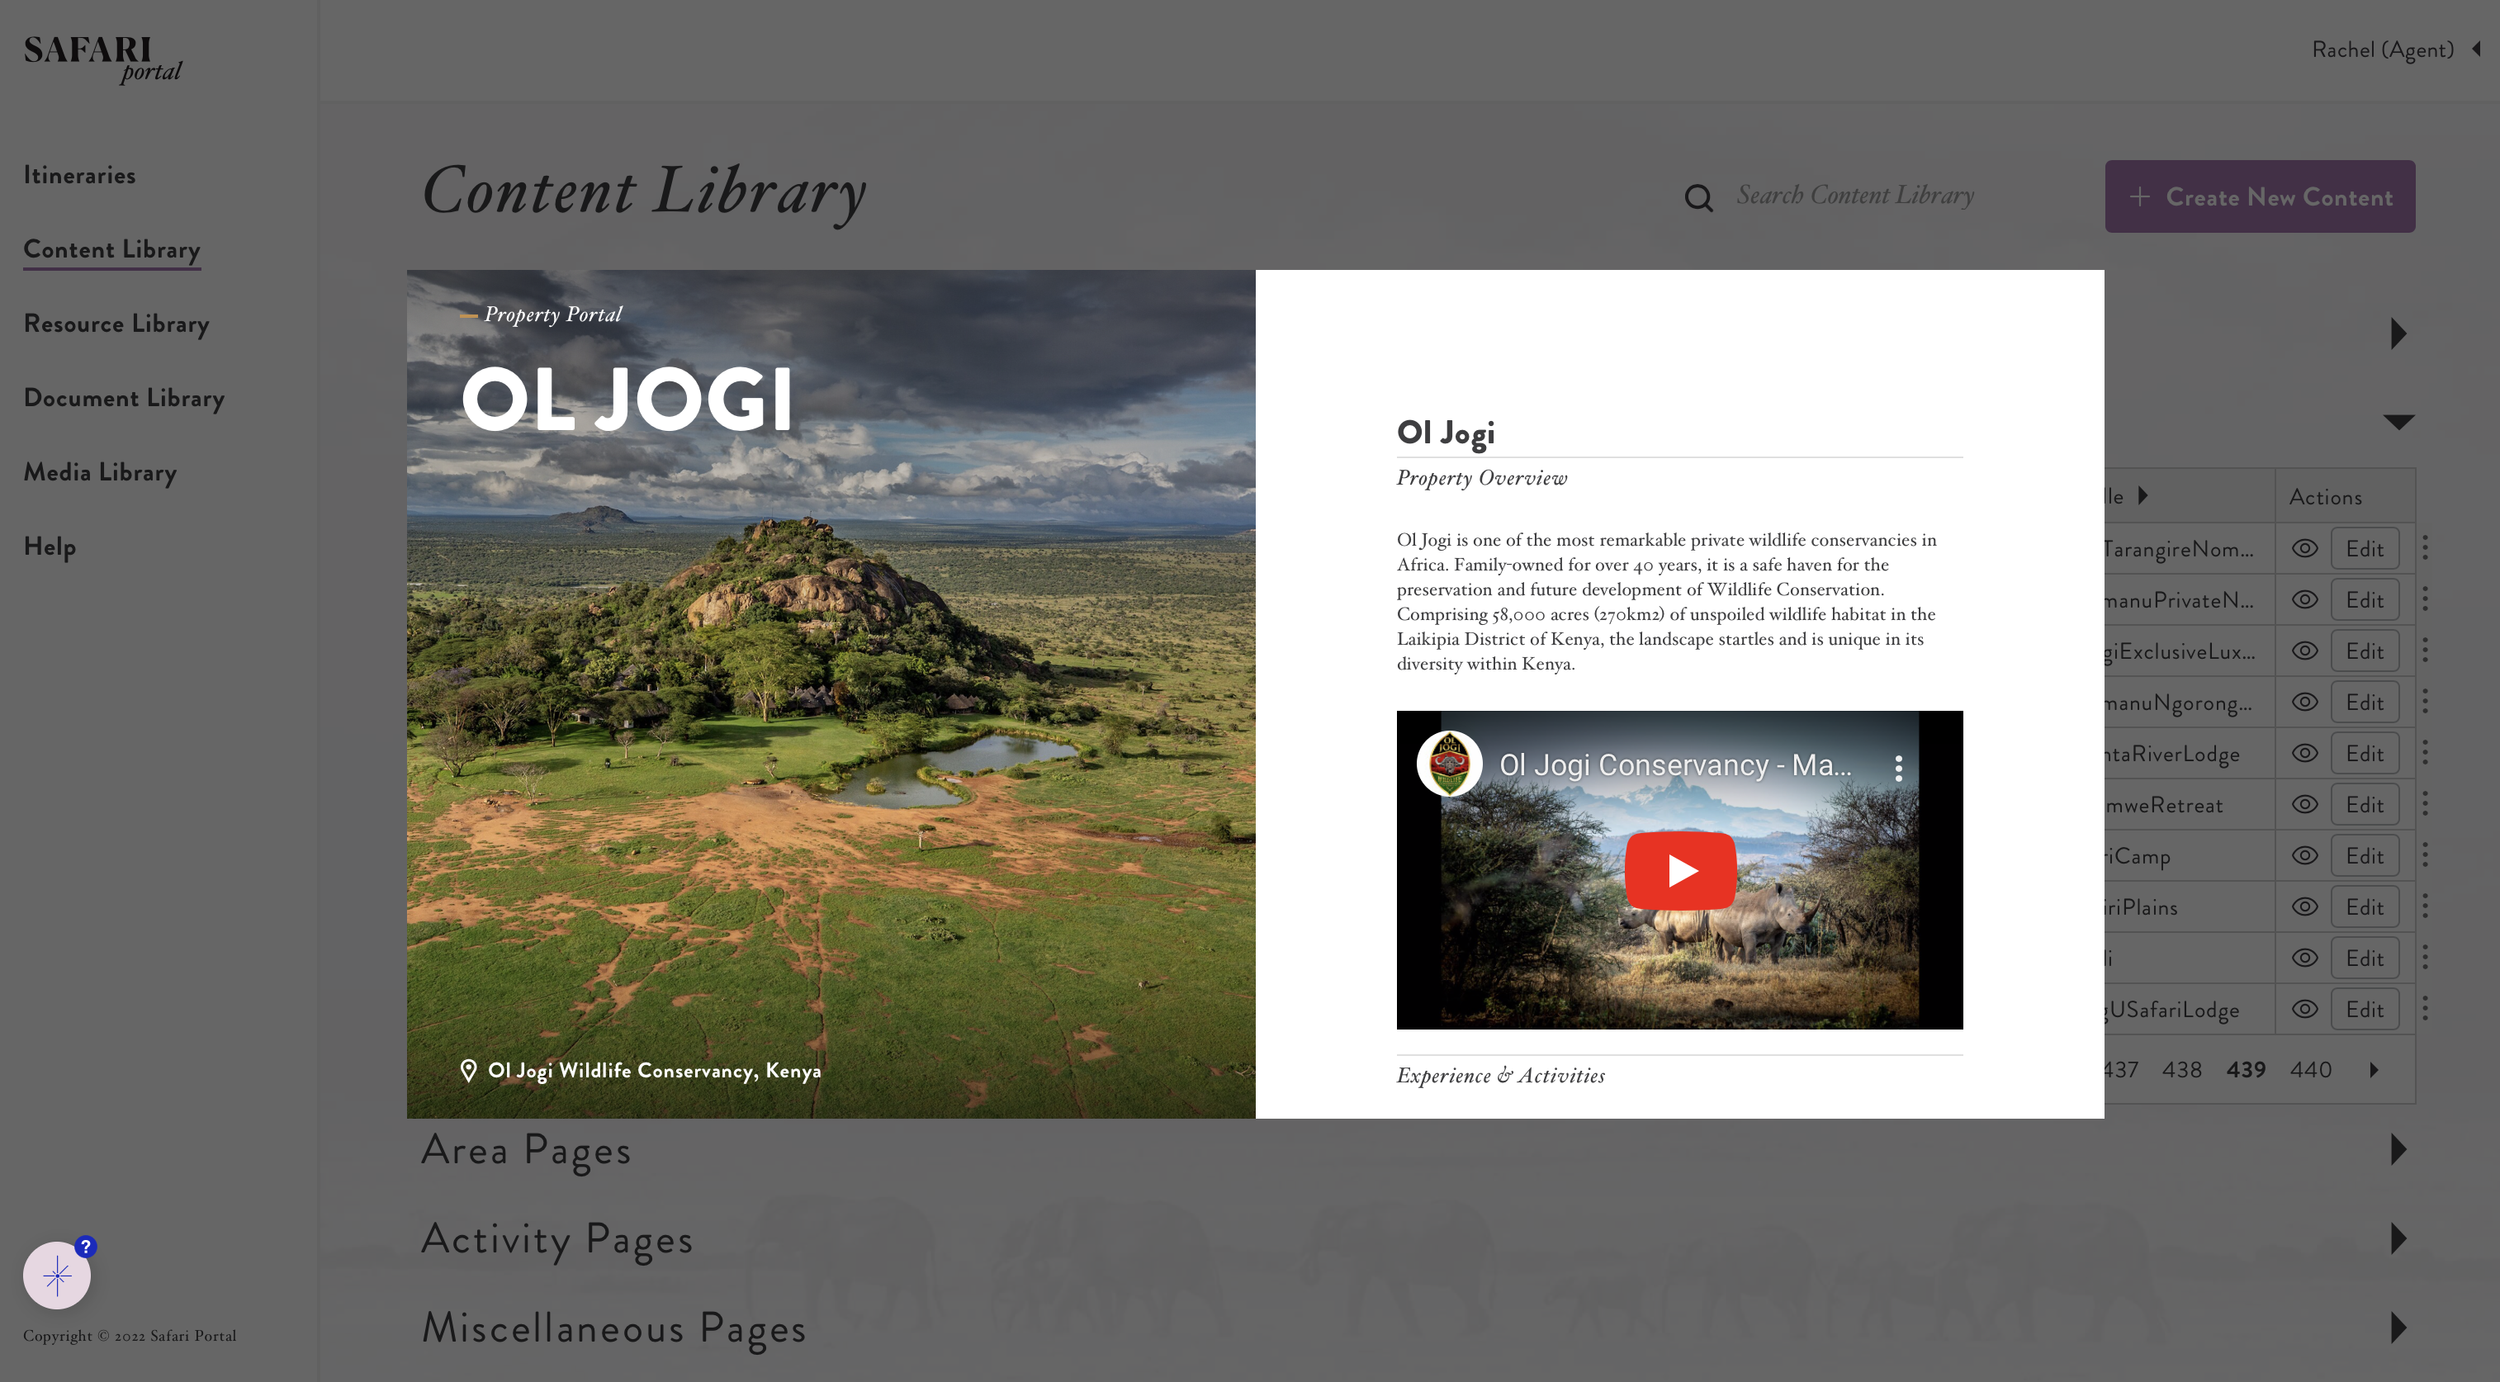 Safari Portal's Content Library